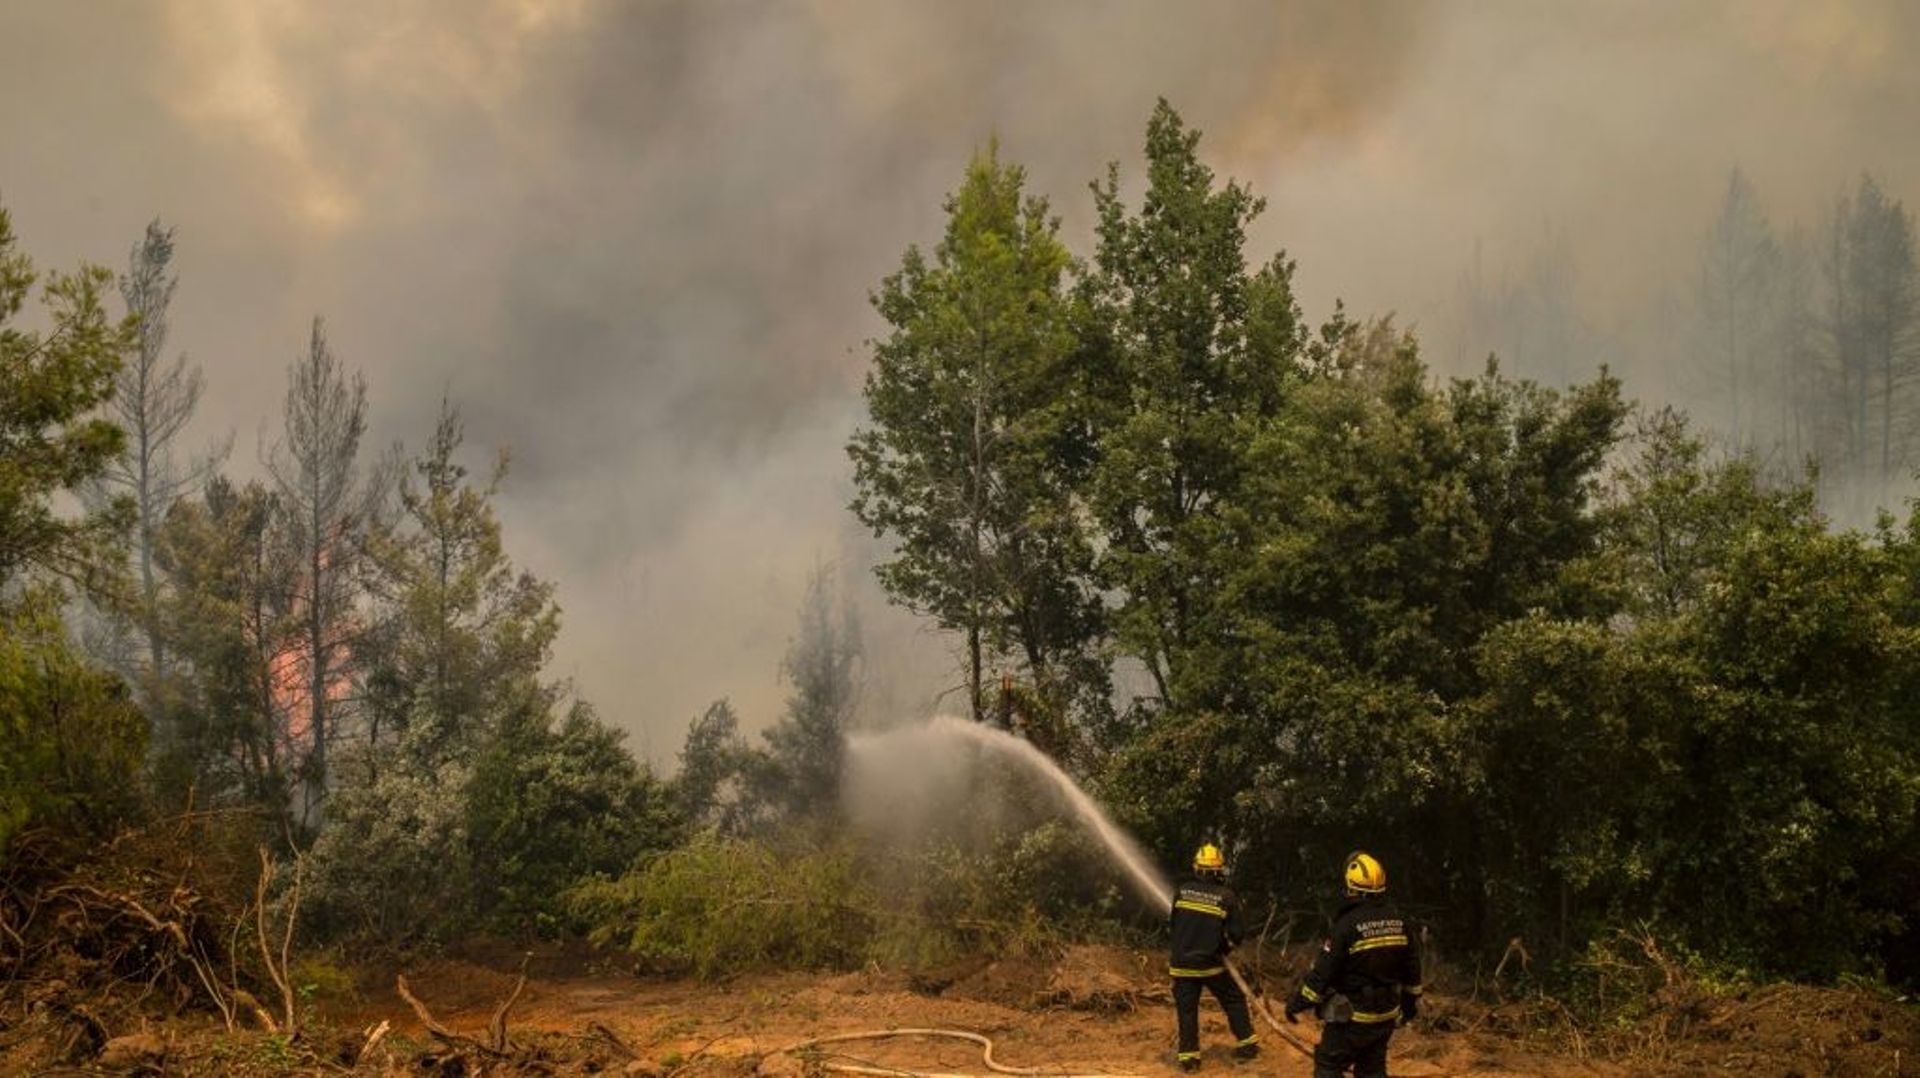 Des pompiers venus de Serbie luttent contre un incendie près du village d'Avgaria sur l'île d'Eubée, le 10 août 2021 en Grèce 